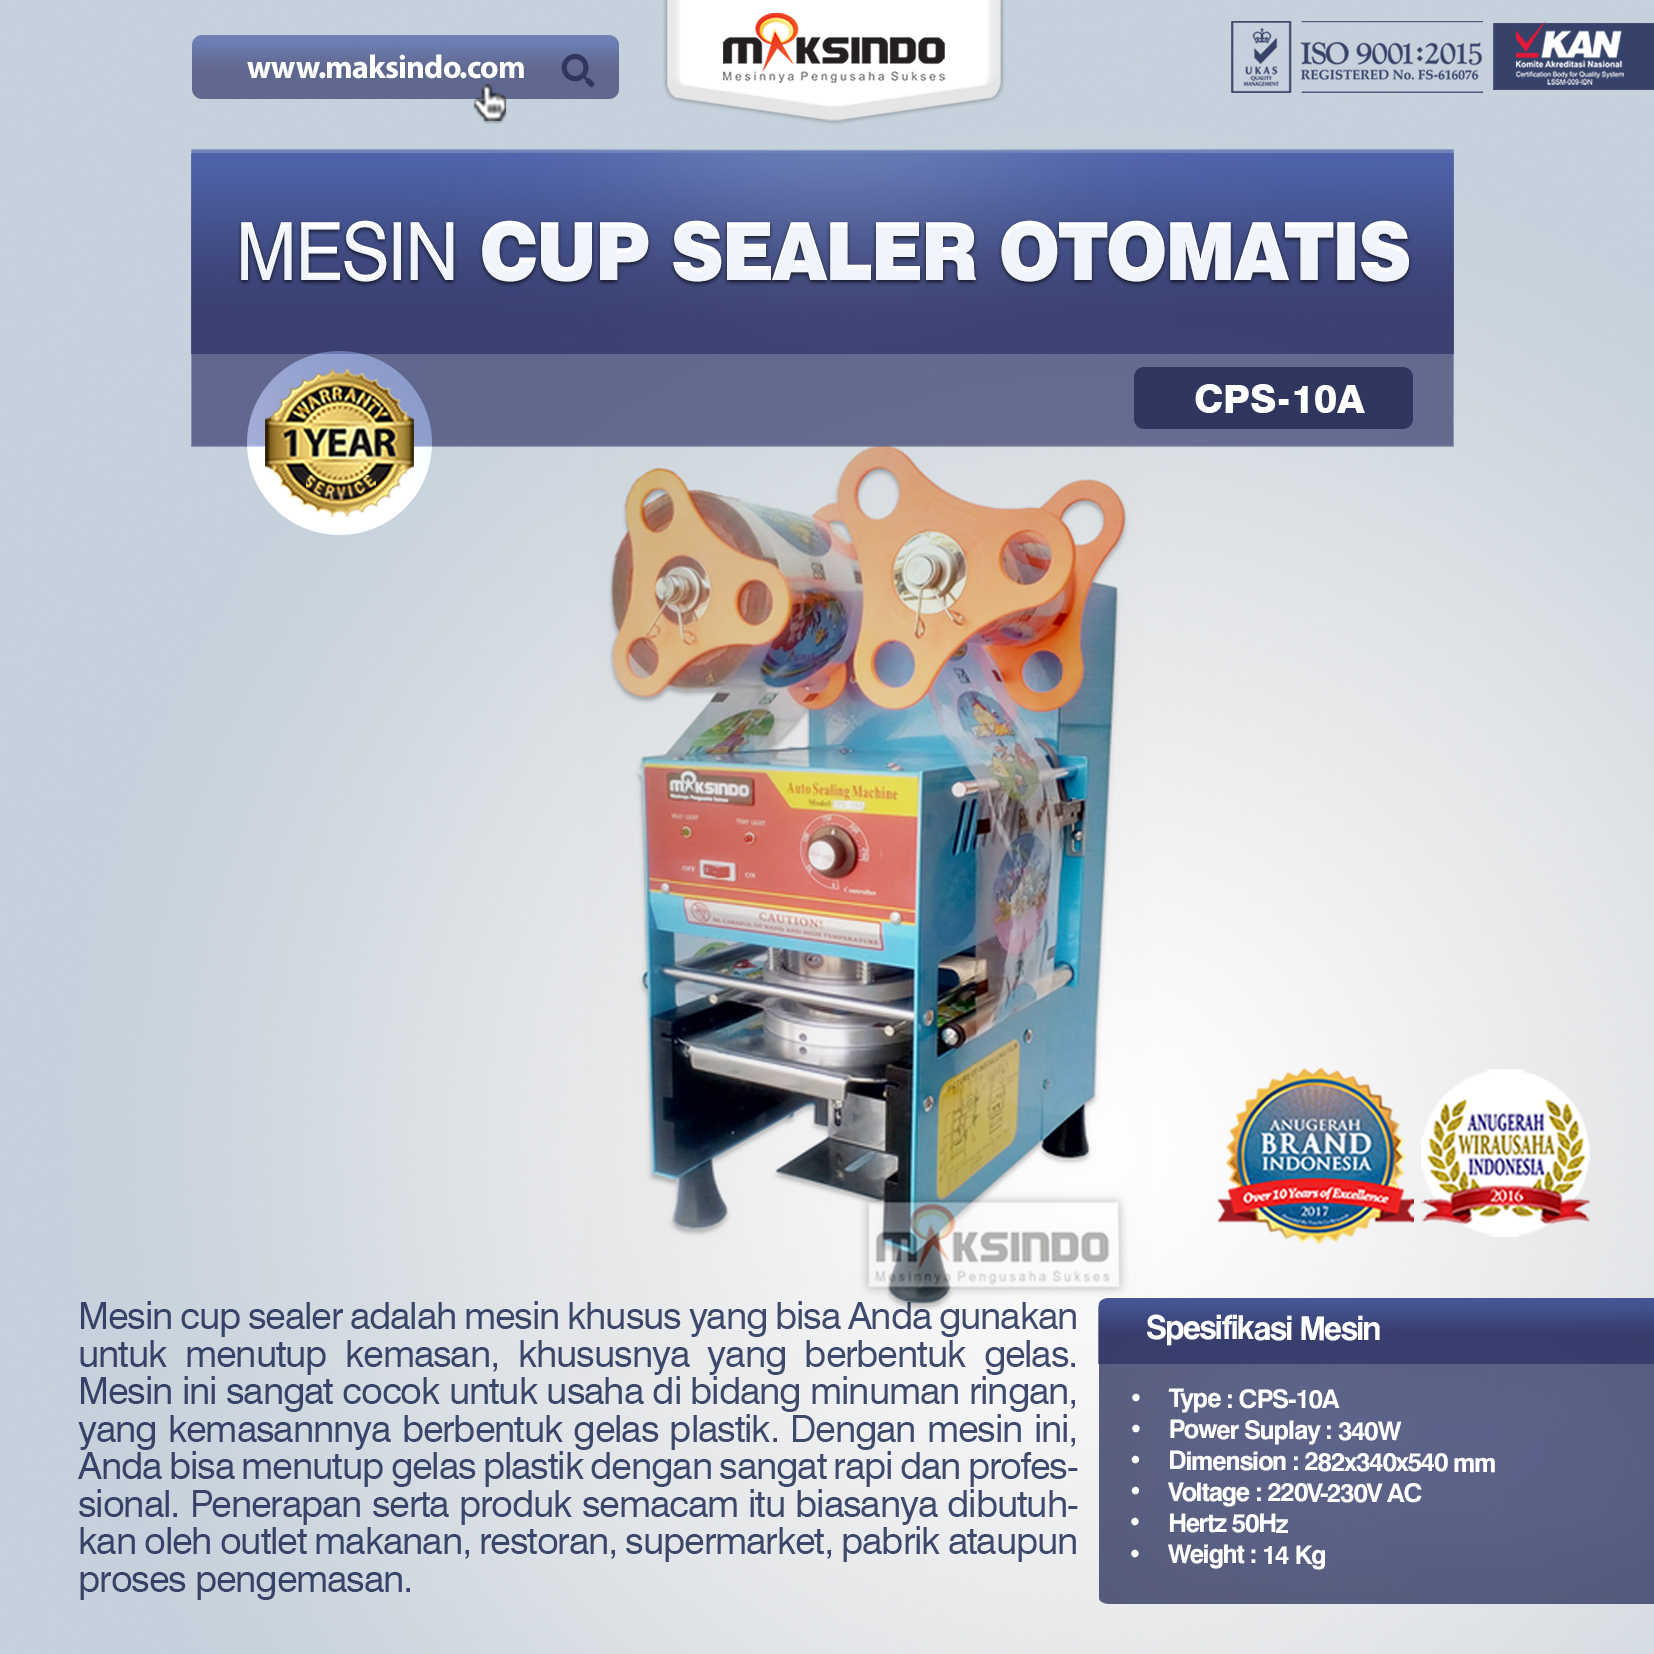 Jual Mesin Cup Sealer Otomatis (CPS-10A) di Solo